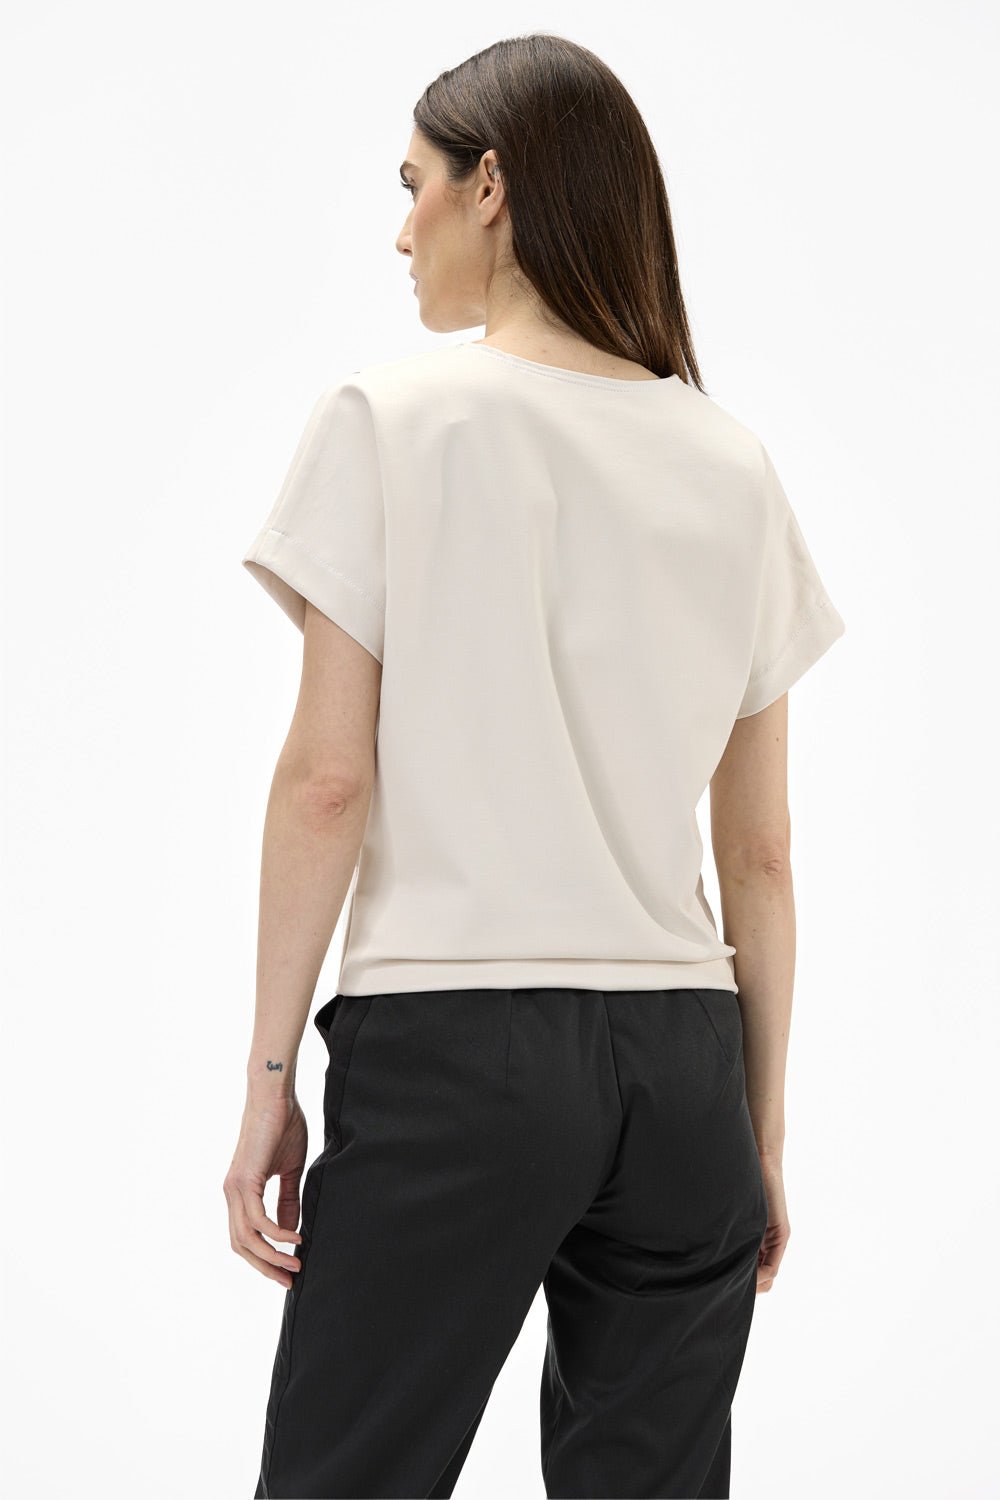 Tricou damă, alb-crem, viscoză premium, croială oversized, detalii elegante (cusături contrastante).